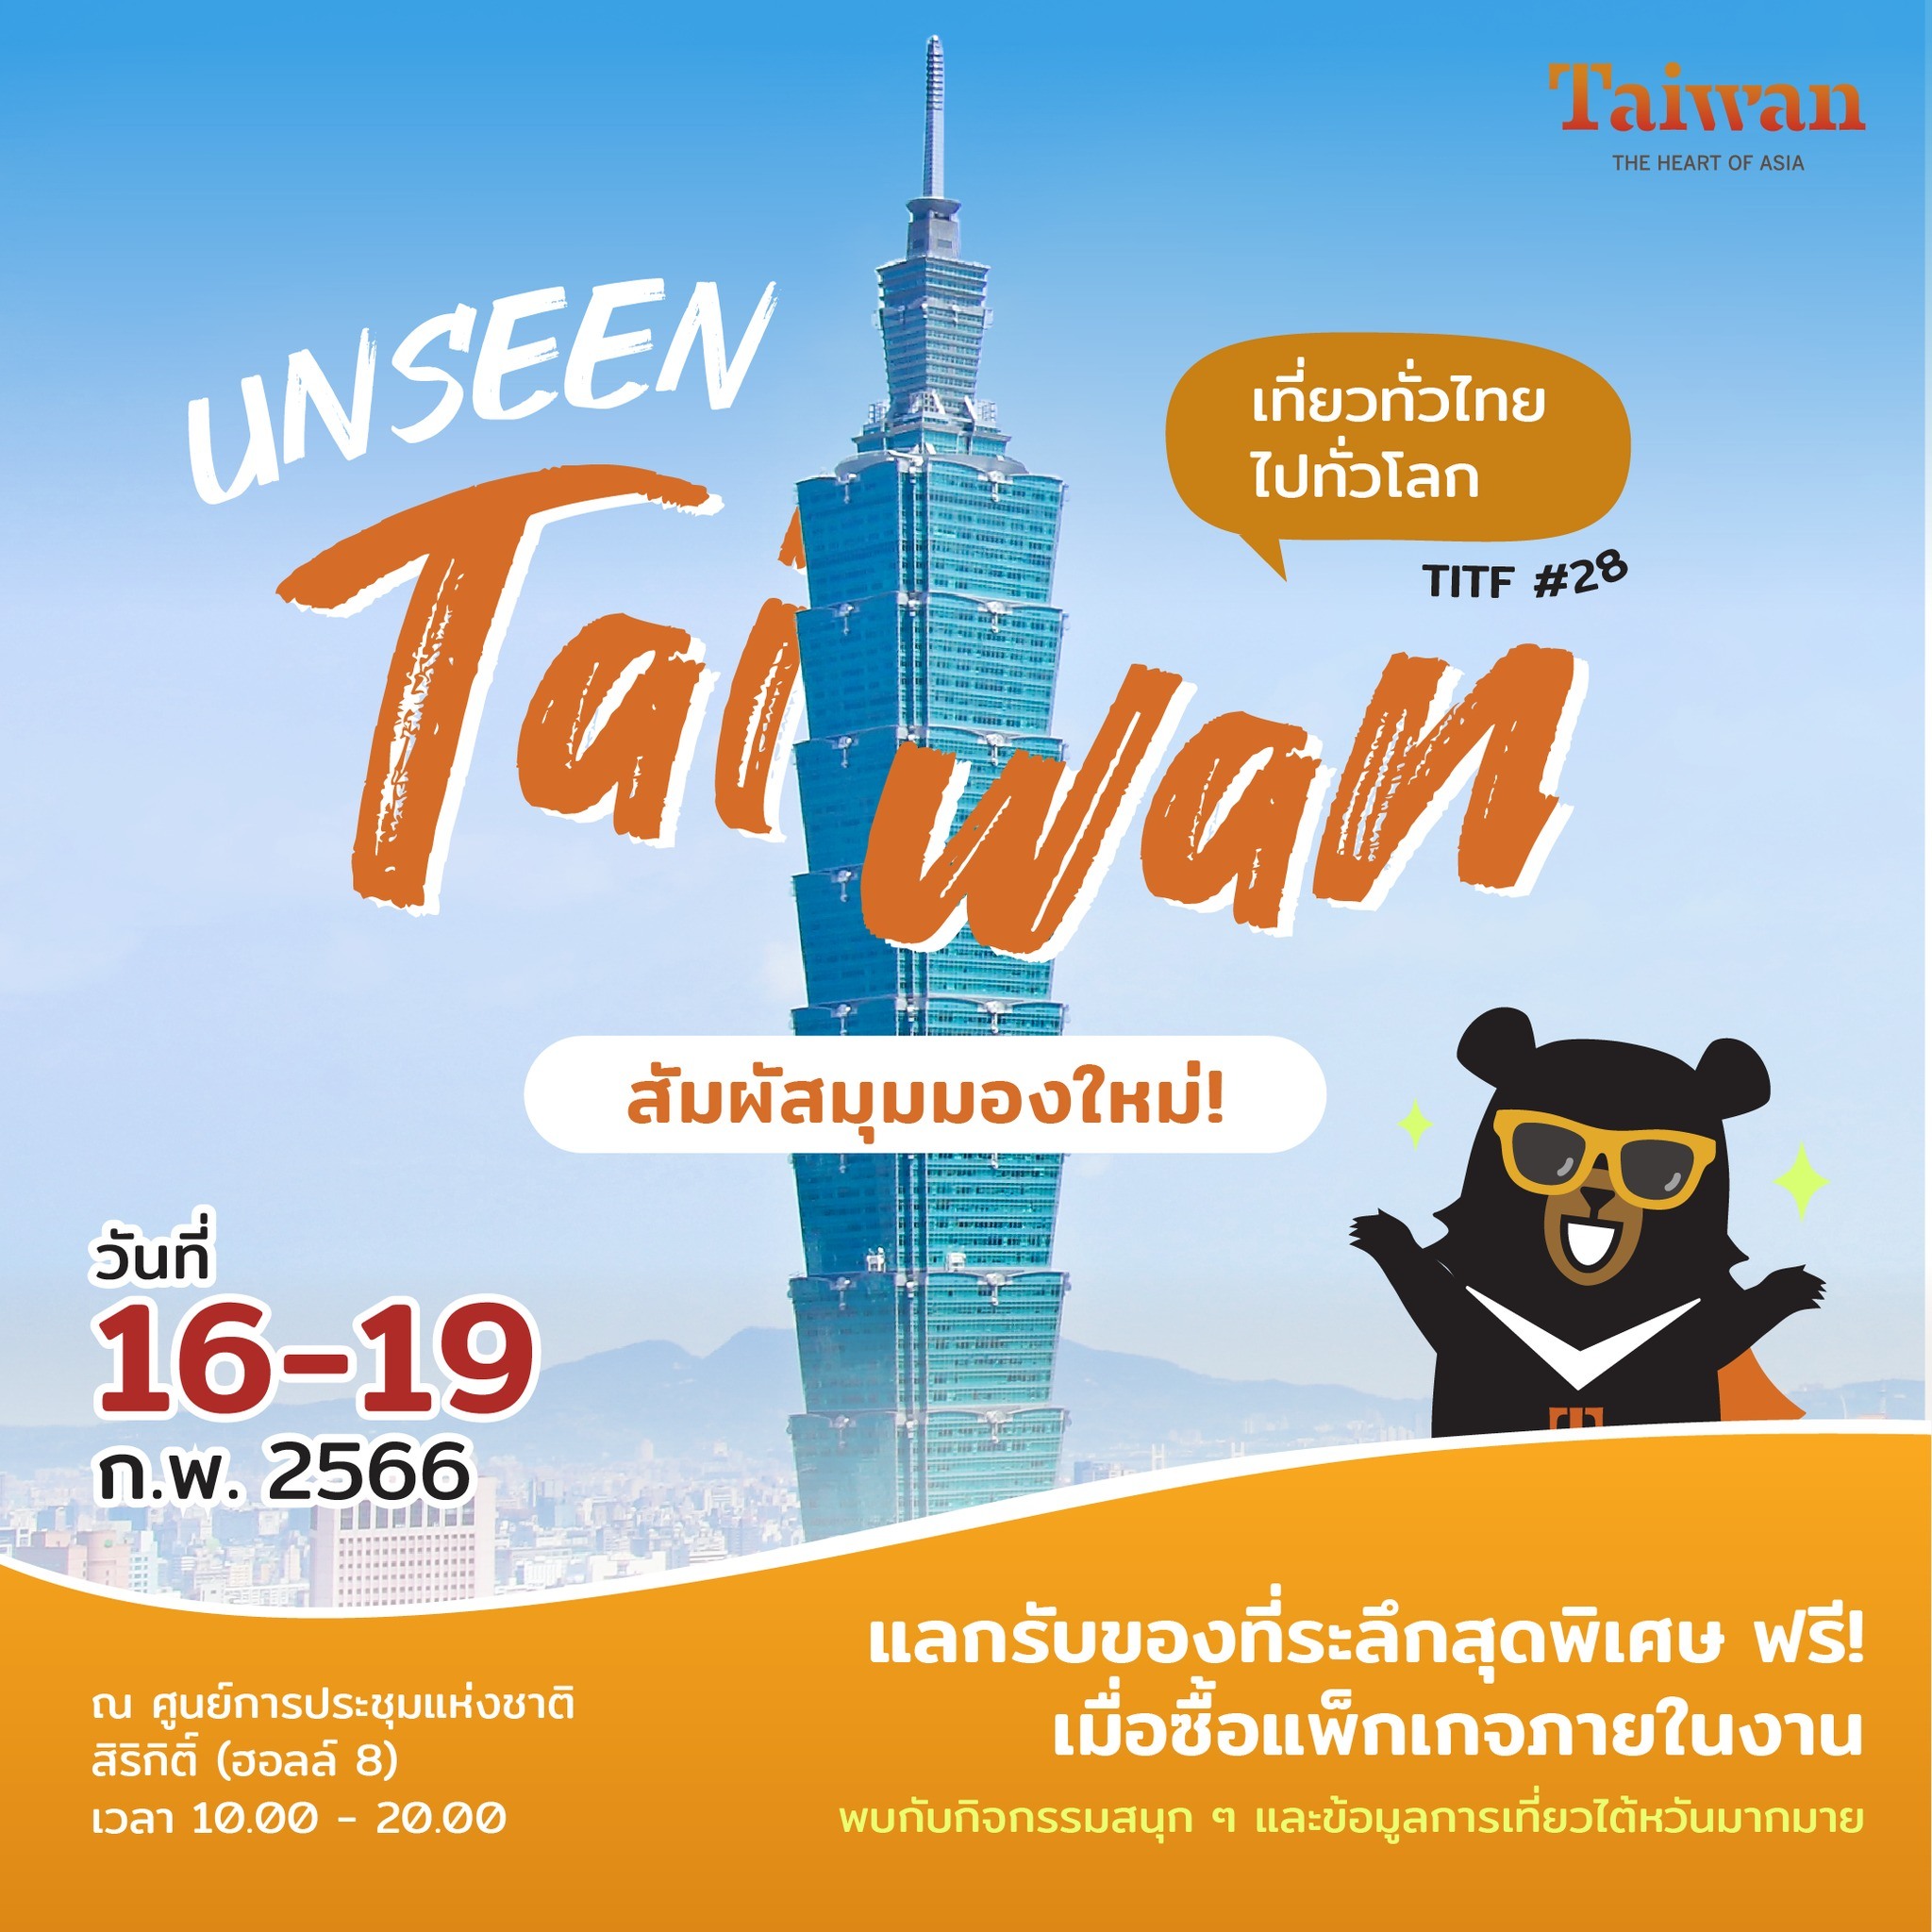 การท่องเที่ยวไต้หวัน เปิดตัวแคมเปญ “The Challenge of Unseen Taiwan” นำเสนอการท่องเที่ยวรูปแบบใหม่ใน 4 มิติ ภาพ／โดย สำนักงานการท่องเที่ยว